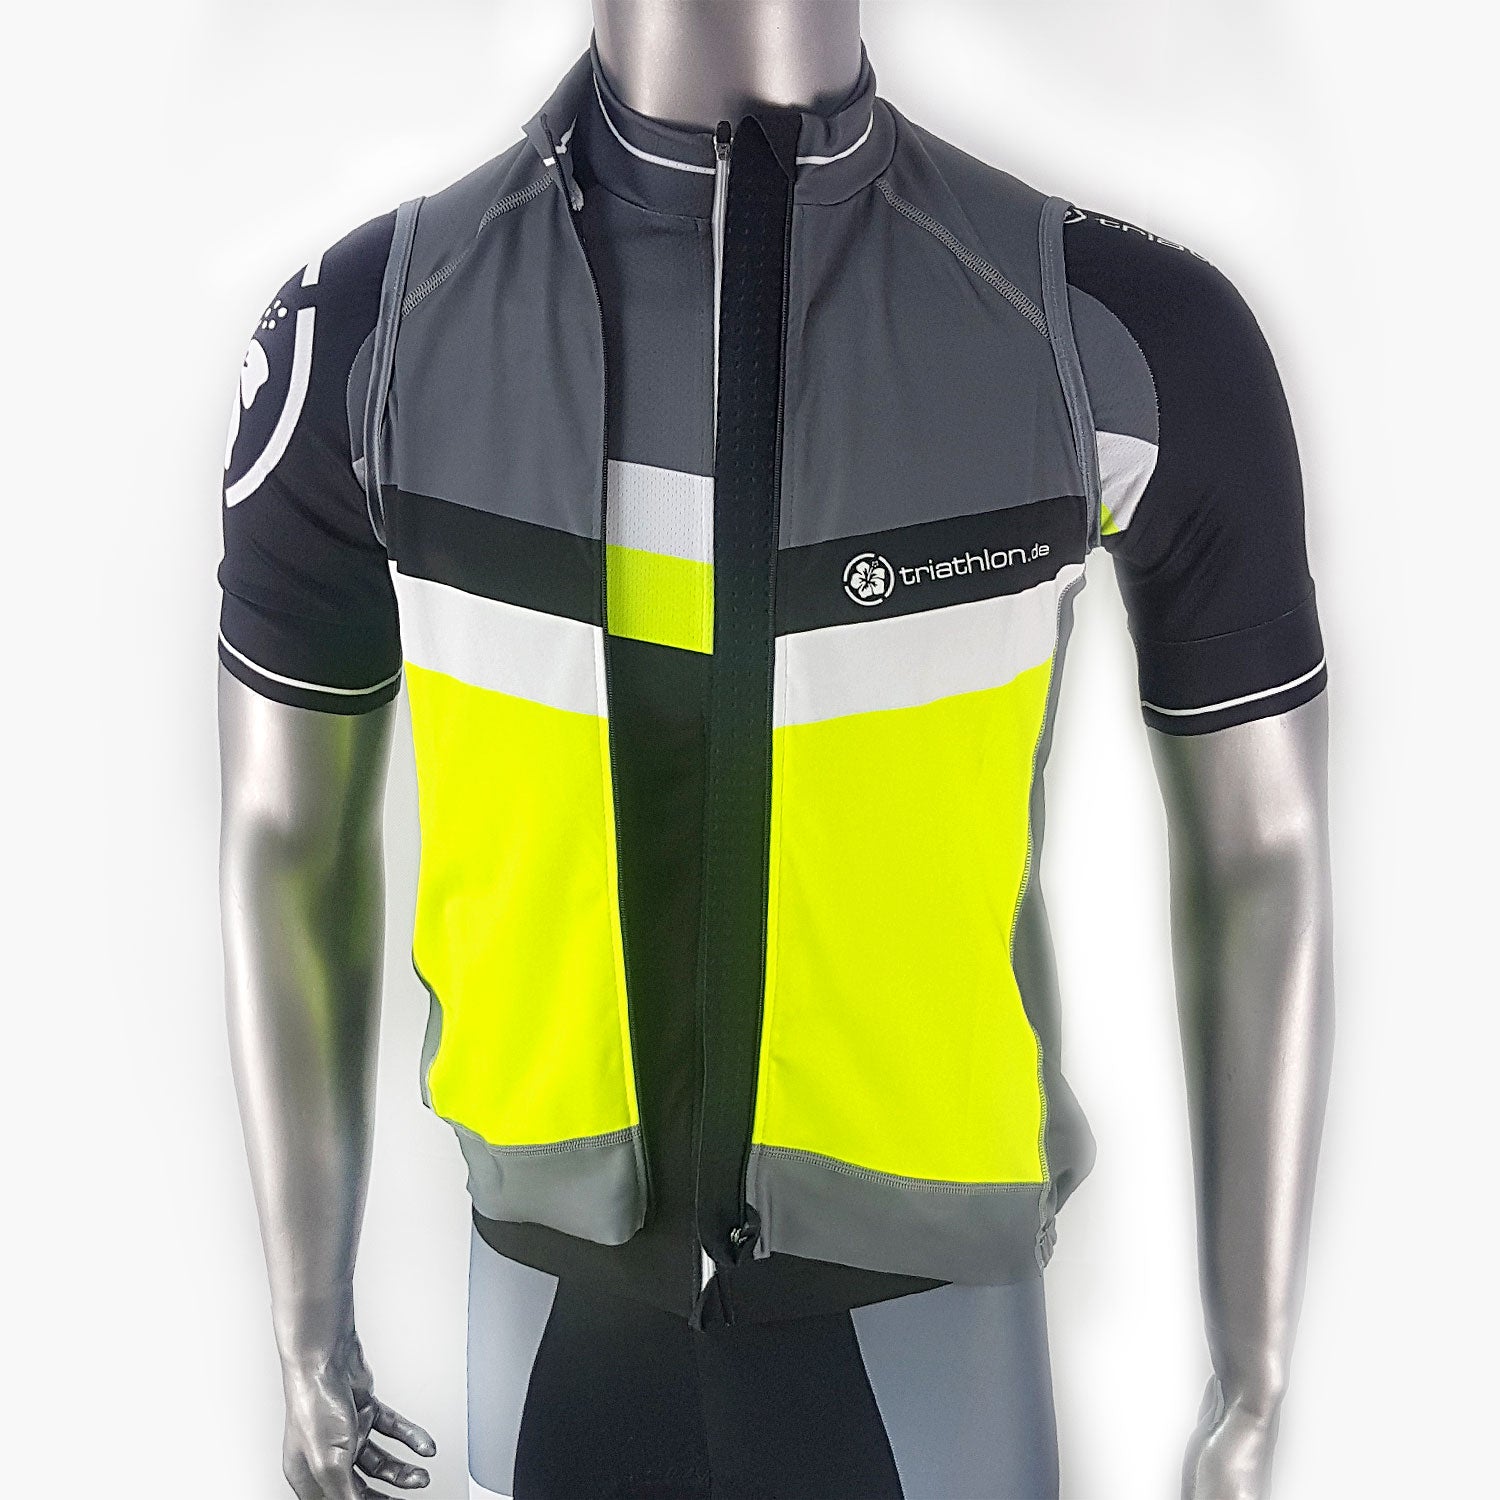 triathlon.de elite cycling vest, men, black/grey/yellow